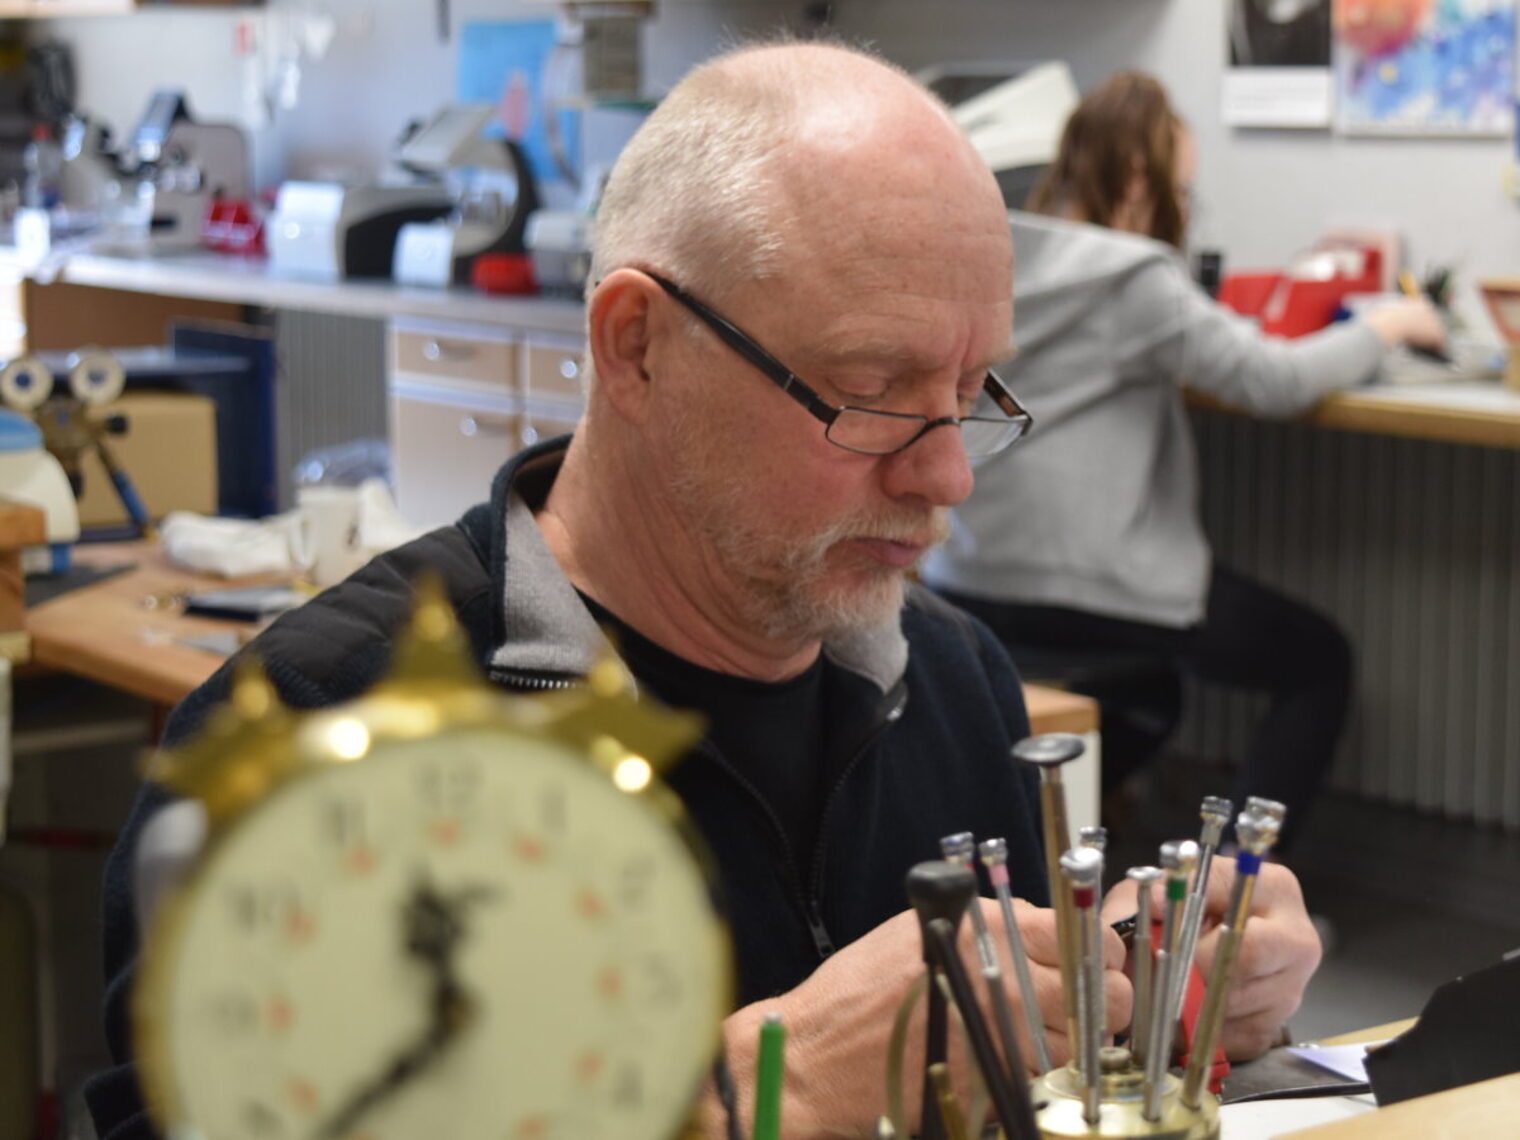 Älterer Mann mit Brille sitzt in einer Werkstatt zwischen Werkzeugen und blickt prüfend auf eine Armbanduhr in seinen Händen.